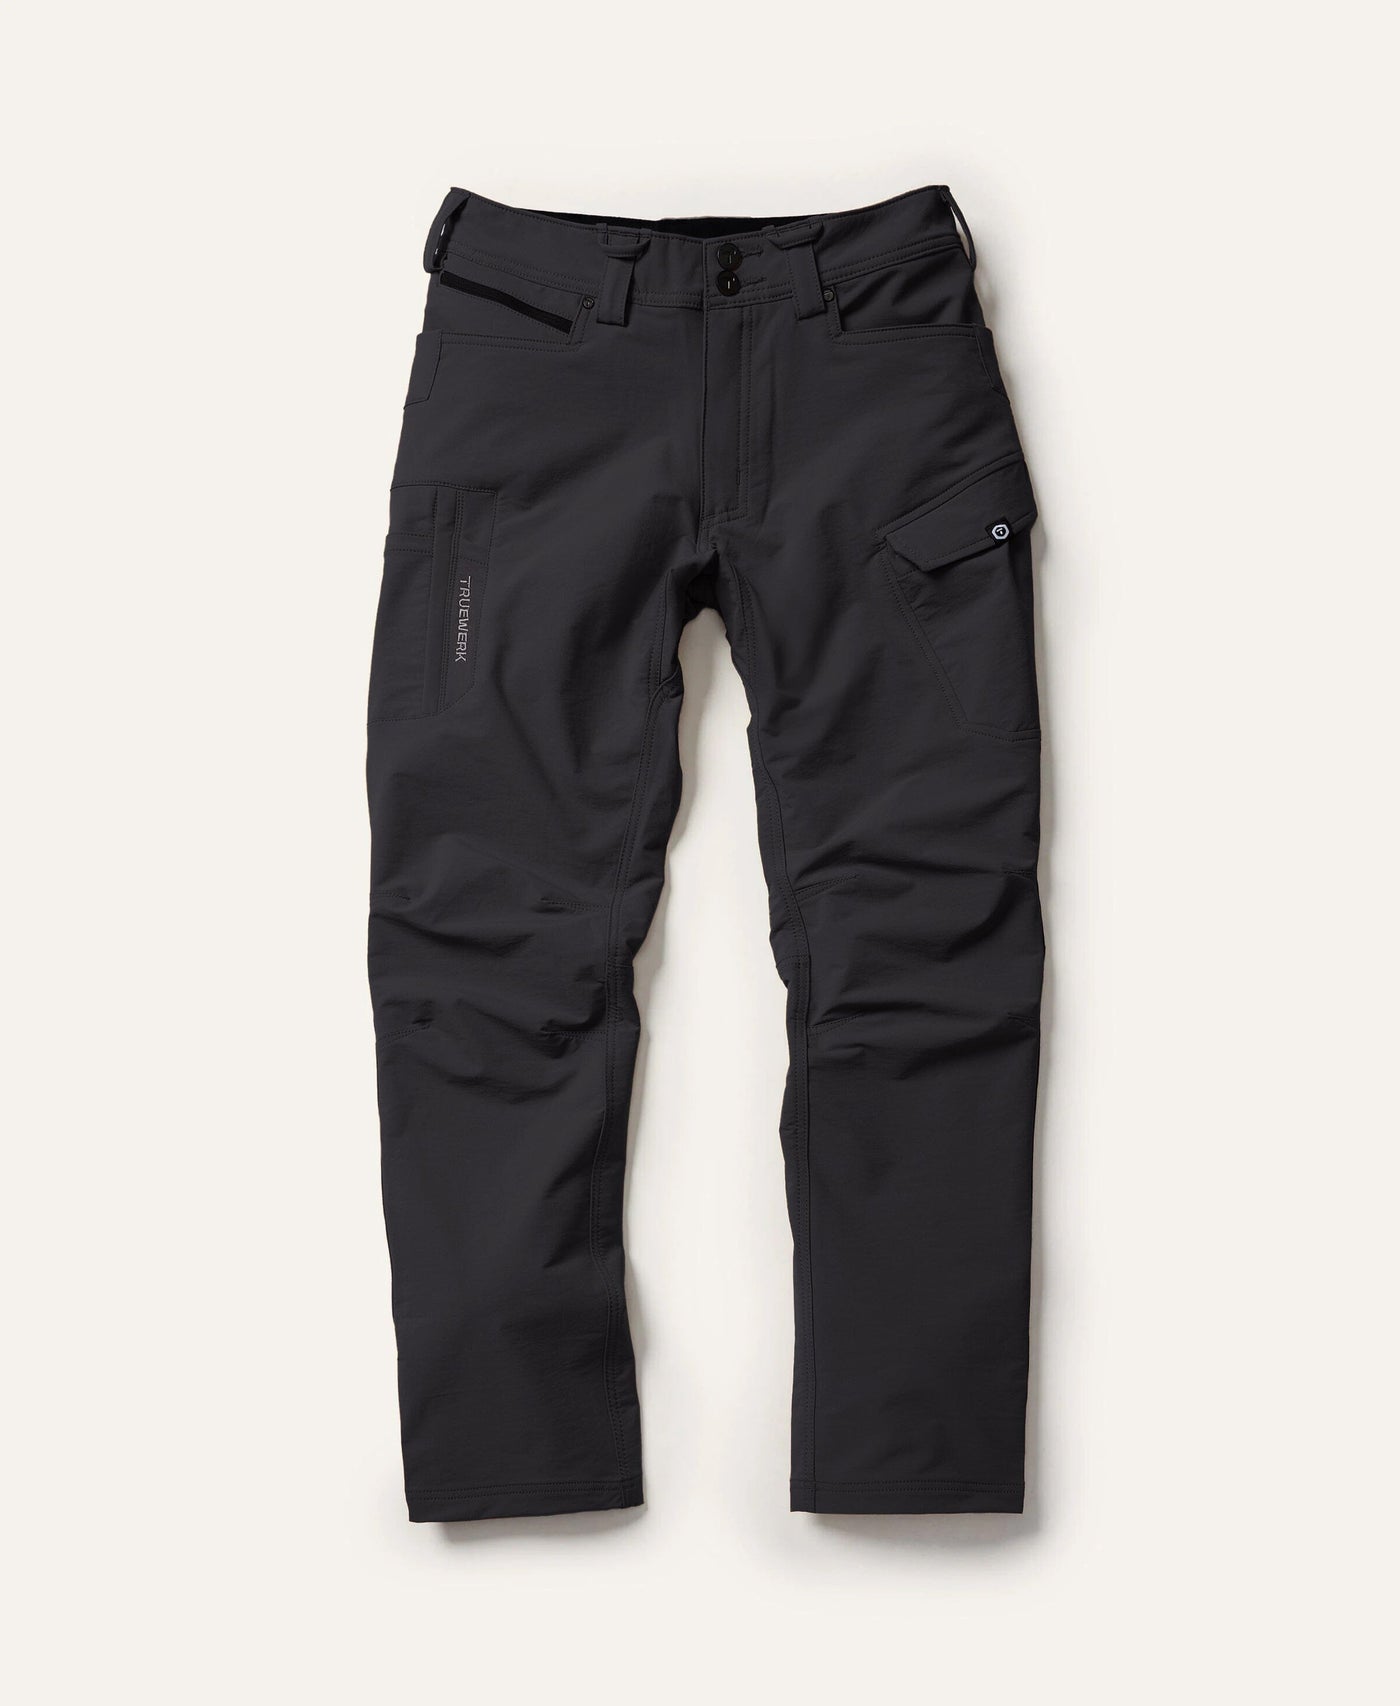 TRUEWERK Pants | Men’s Workwear Pants | Shop TRUEWERK